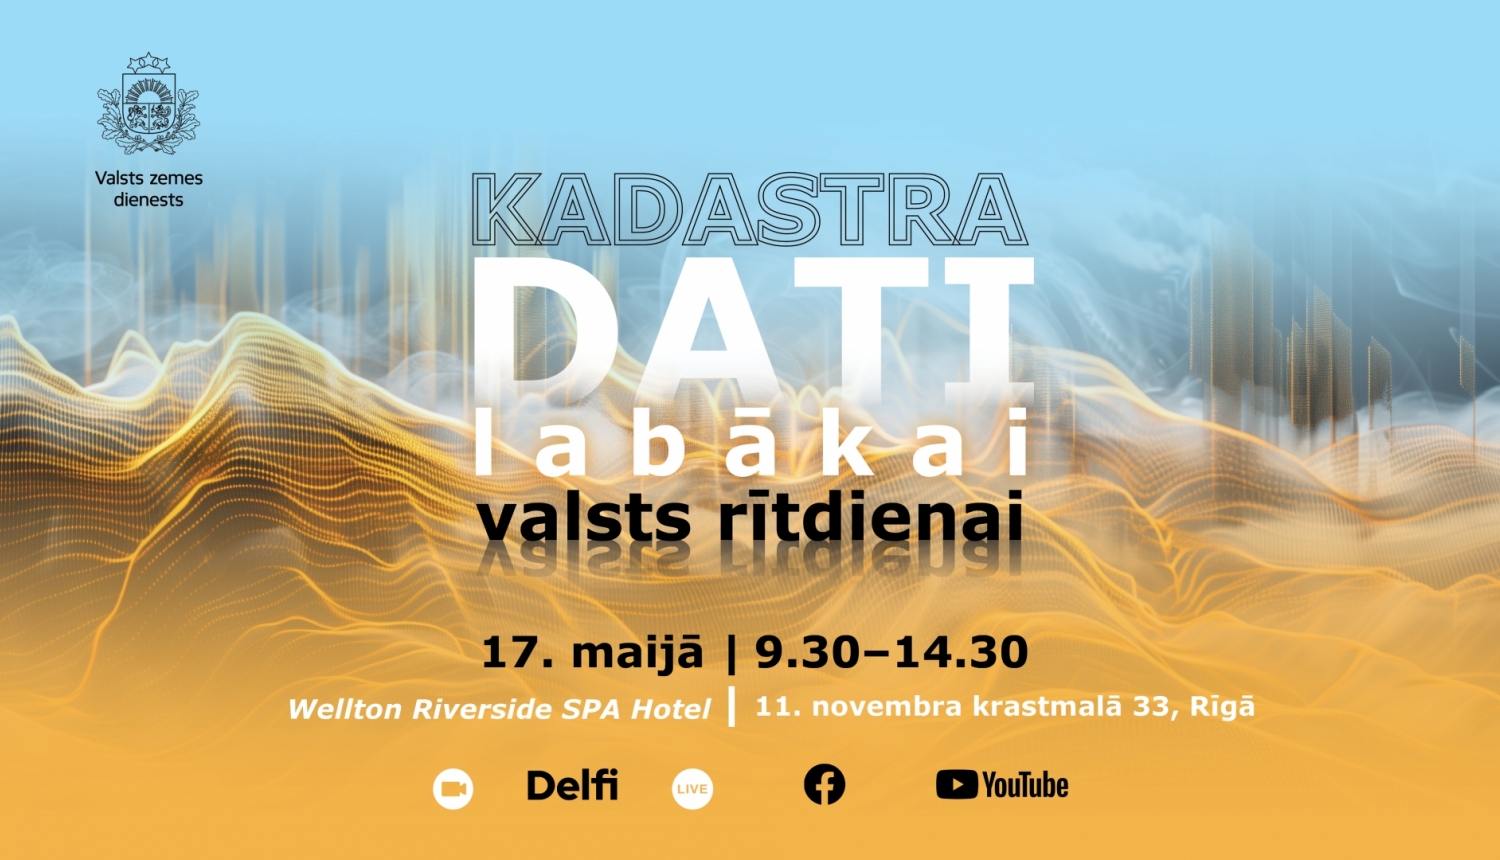 Valsts zemes dienests Rīgā rīkos starptautisku datu konferenci  “Kadastra dati labākai valsts rītdienai”